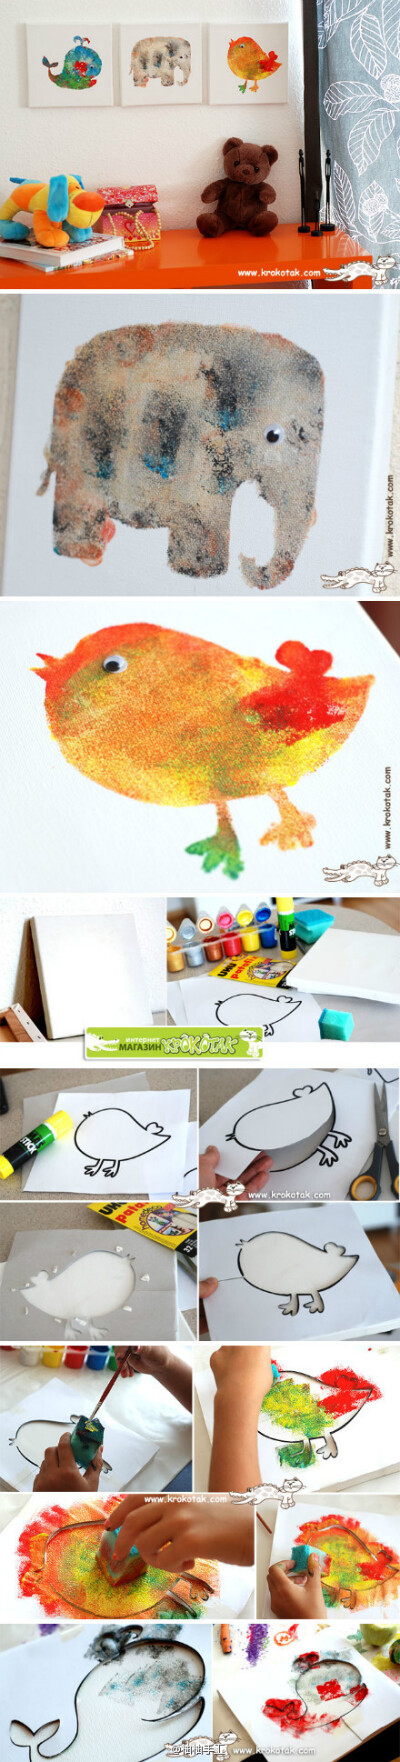 海绵+颜料=孩子心中美丽的图画